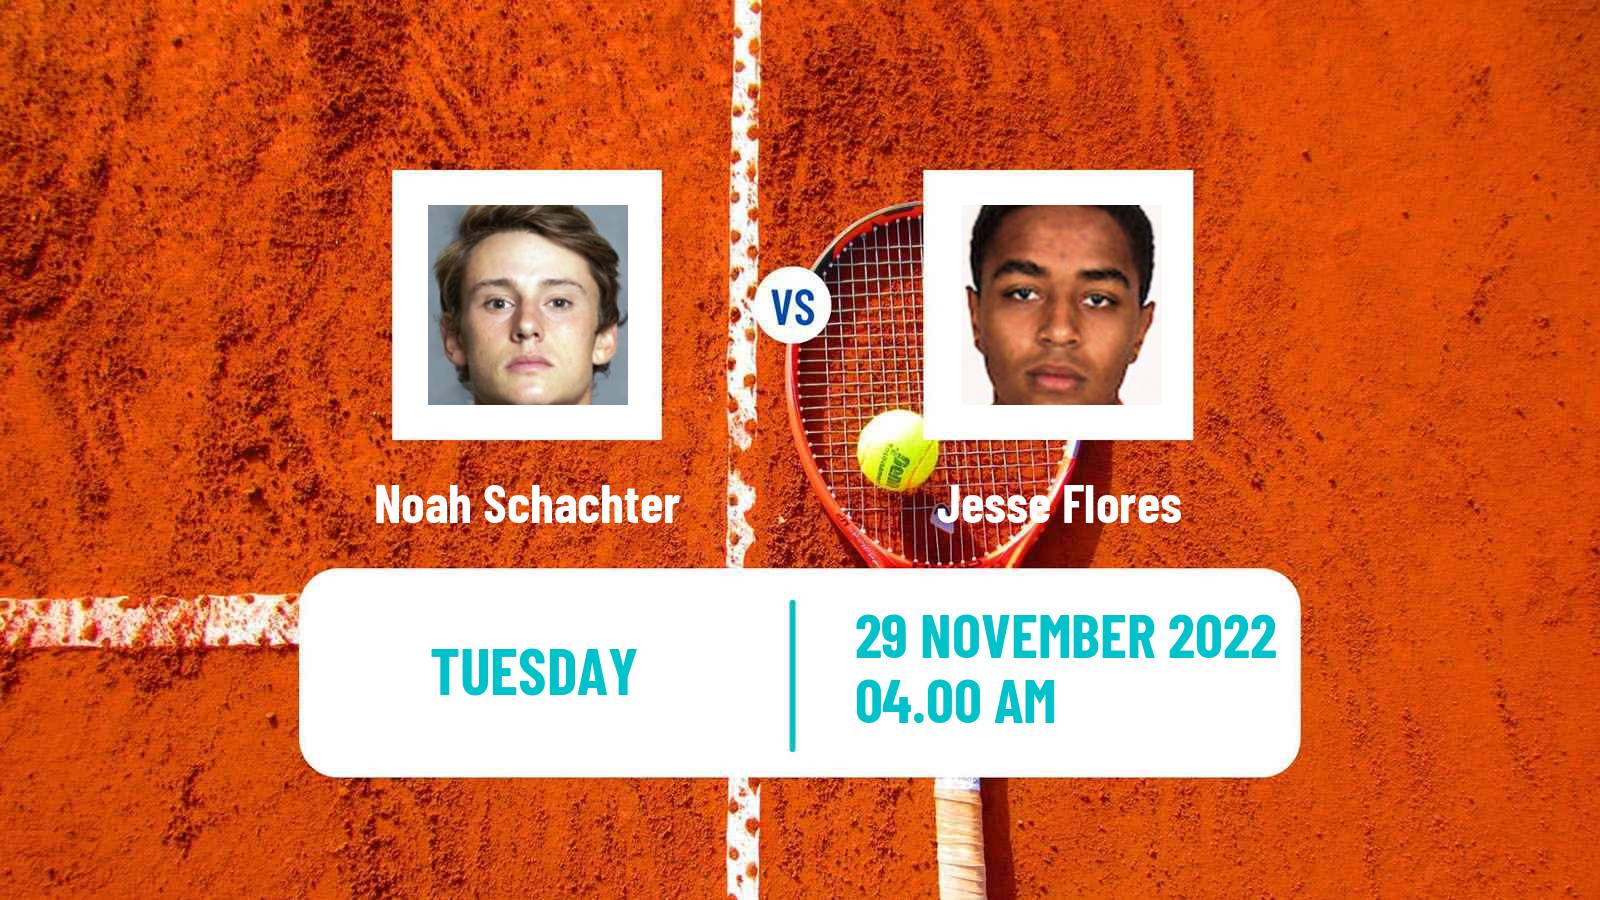 Tennis ITF Tournaments Noah Schachter - Jesse Flores